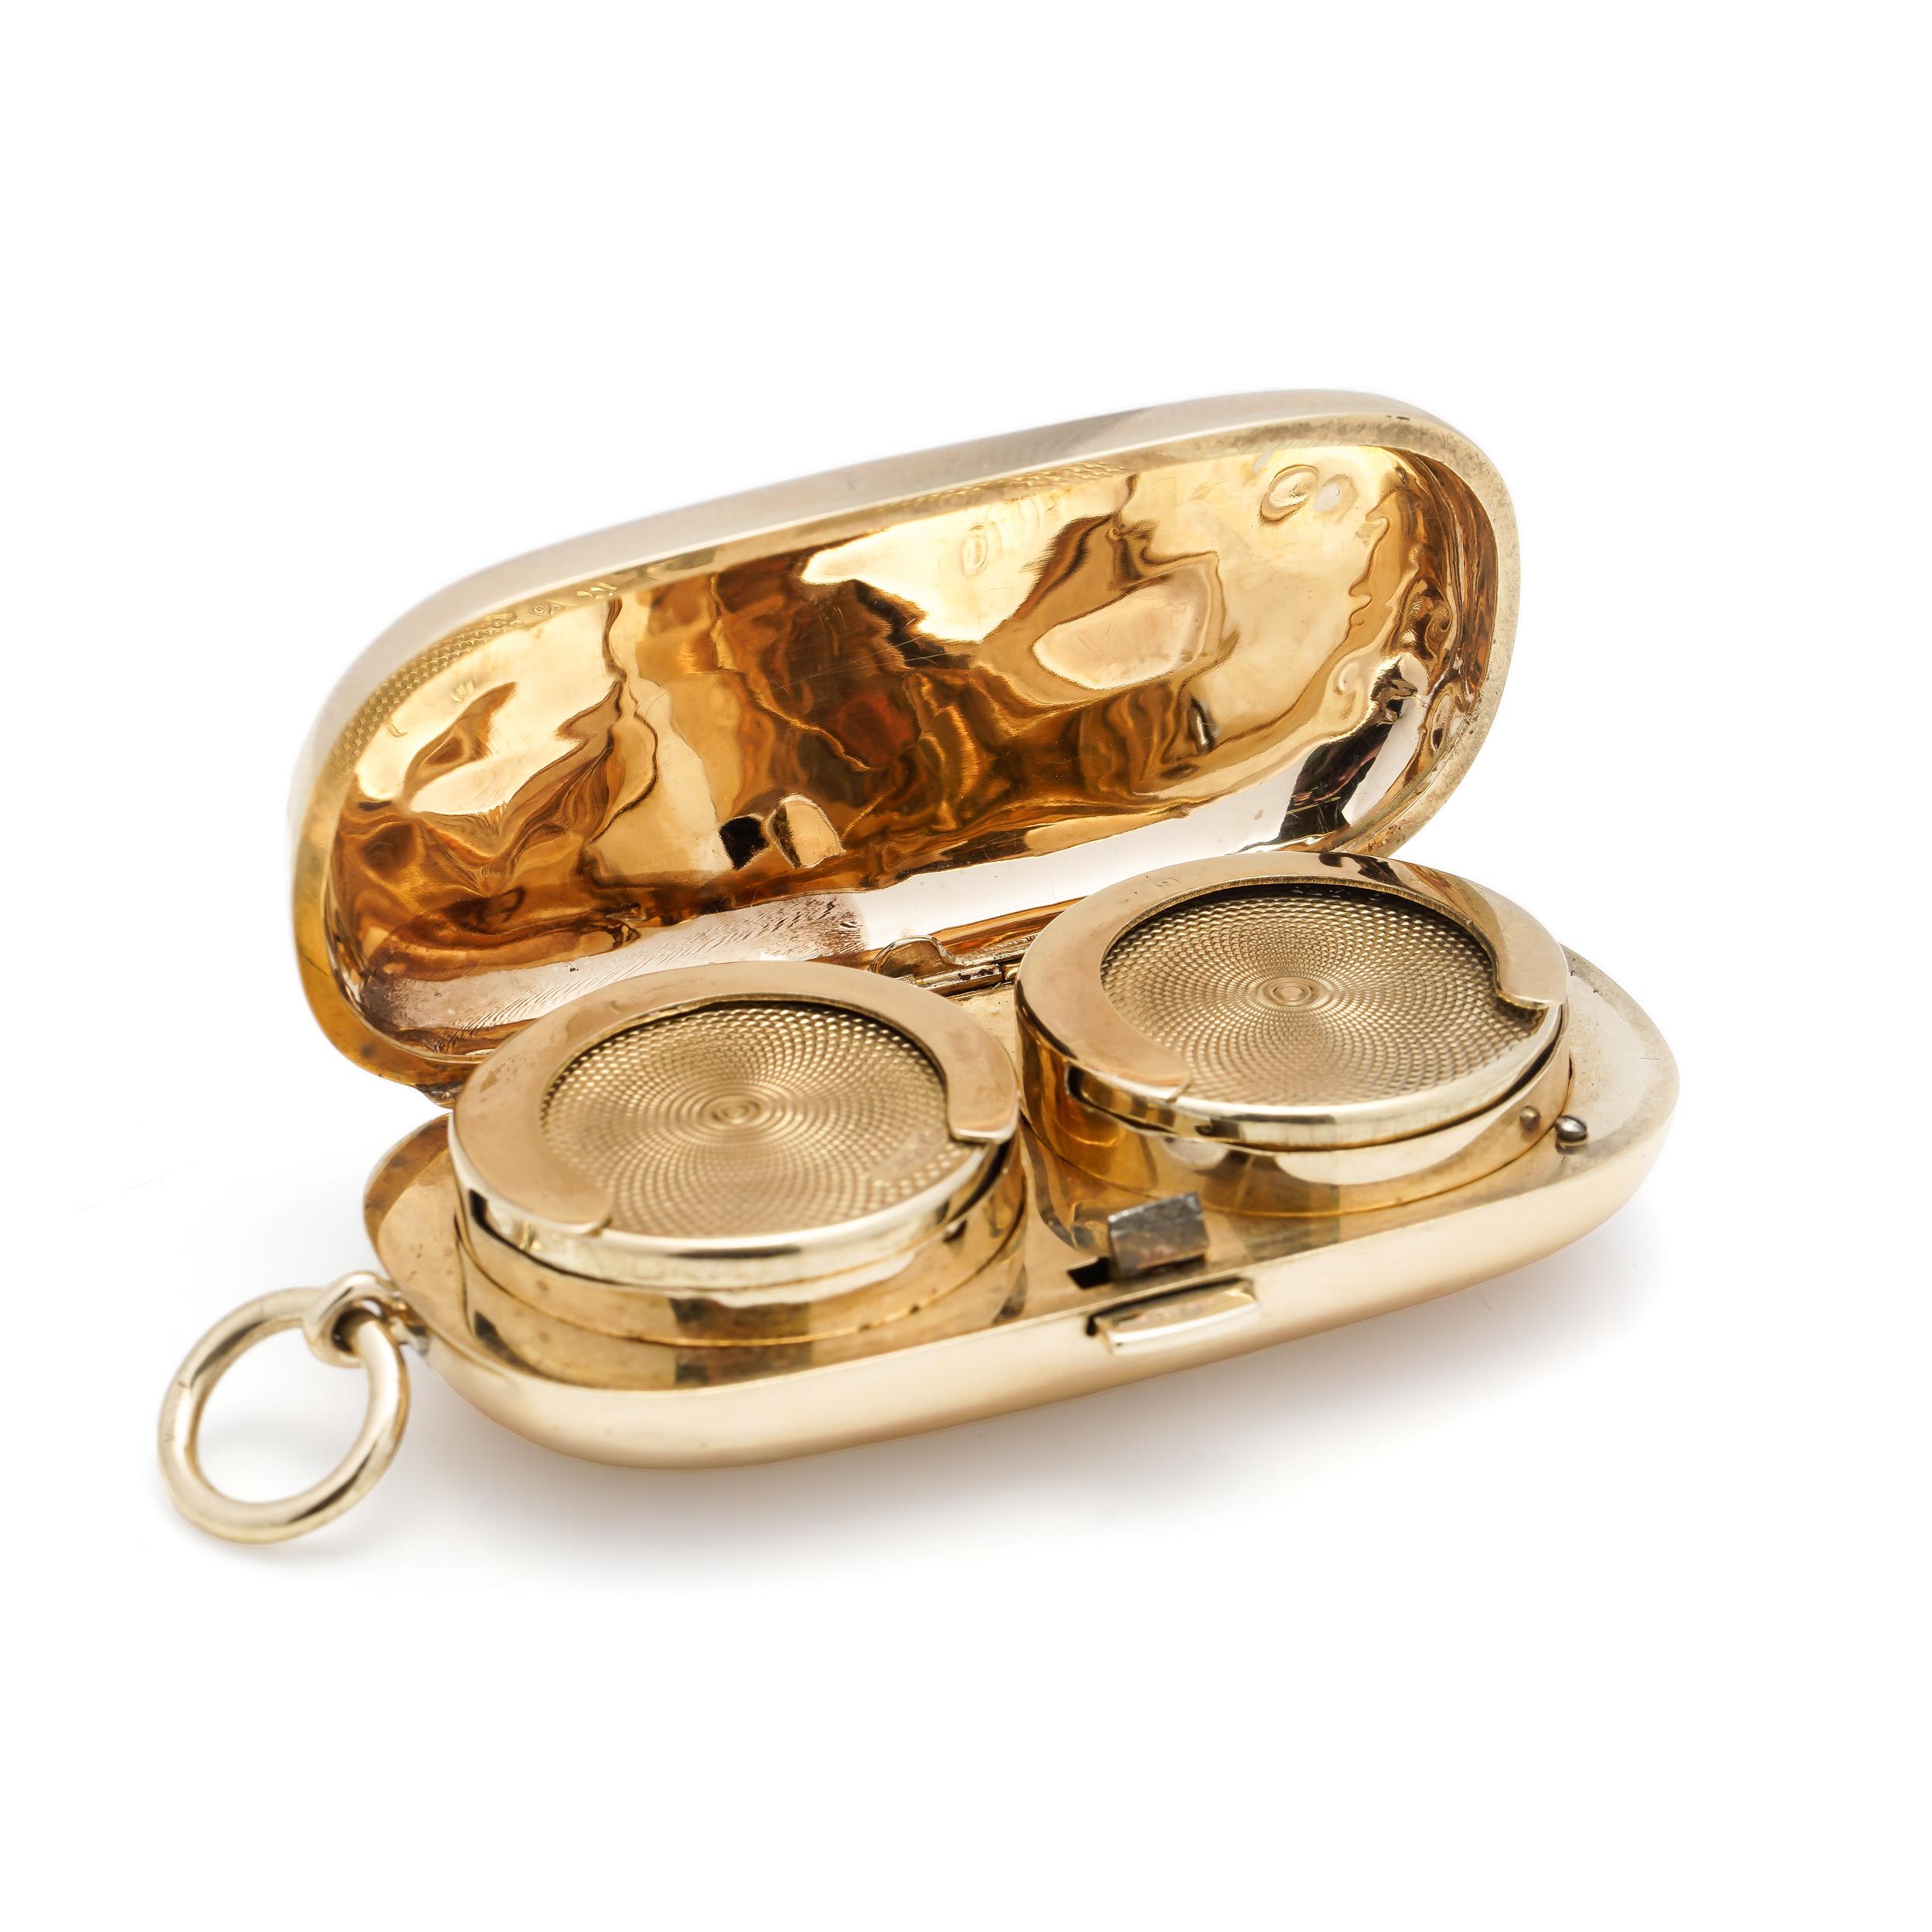 gold sovereign case